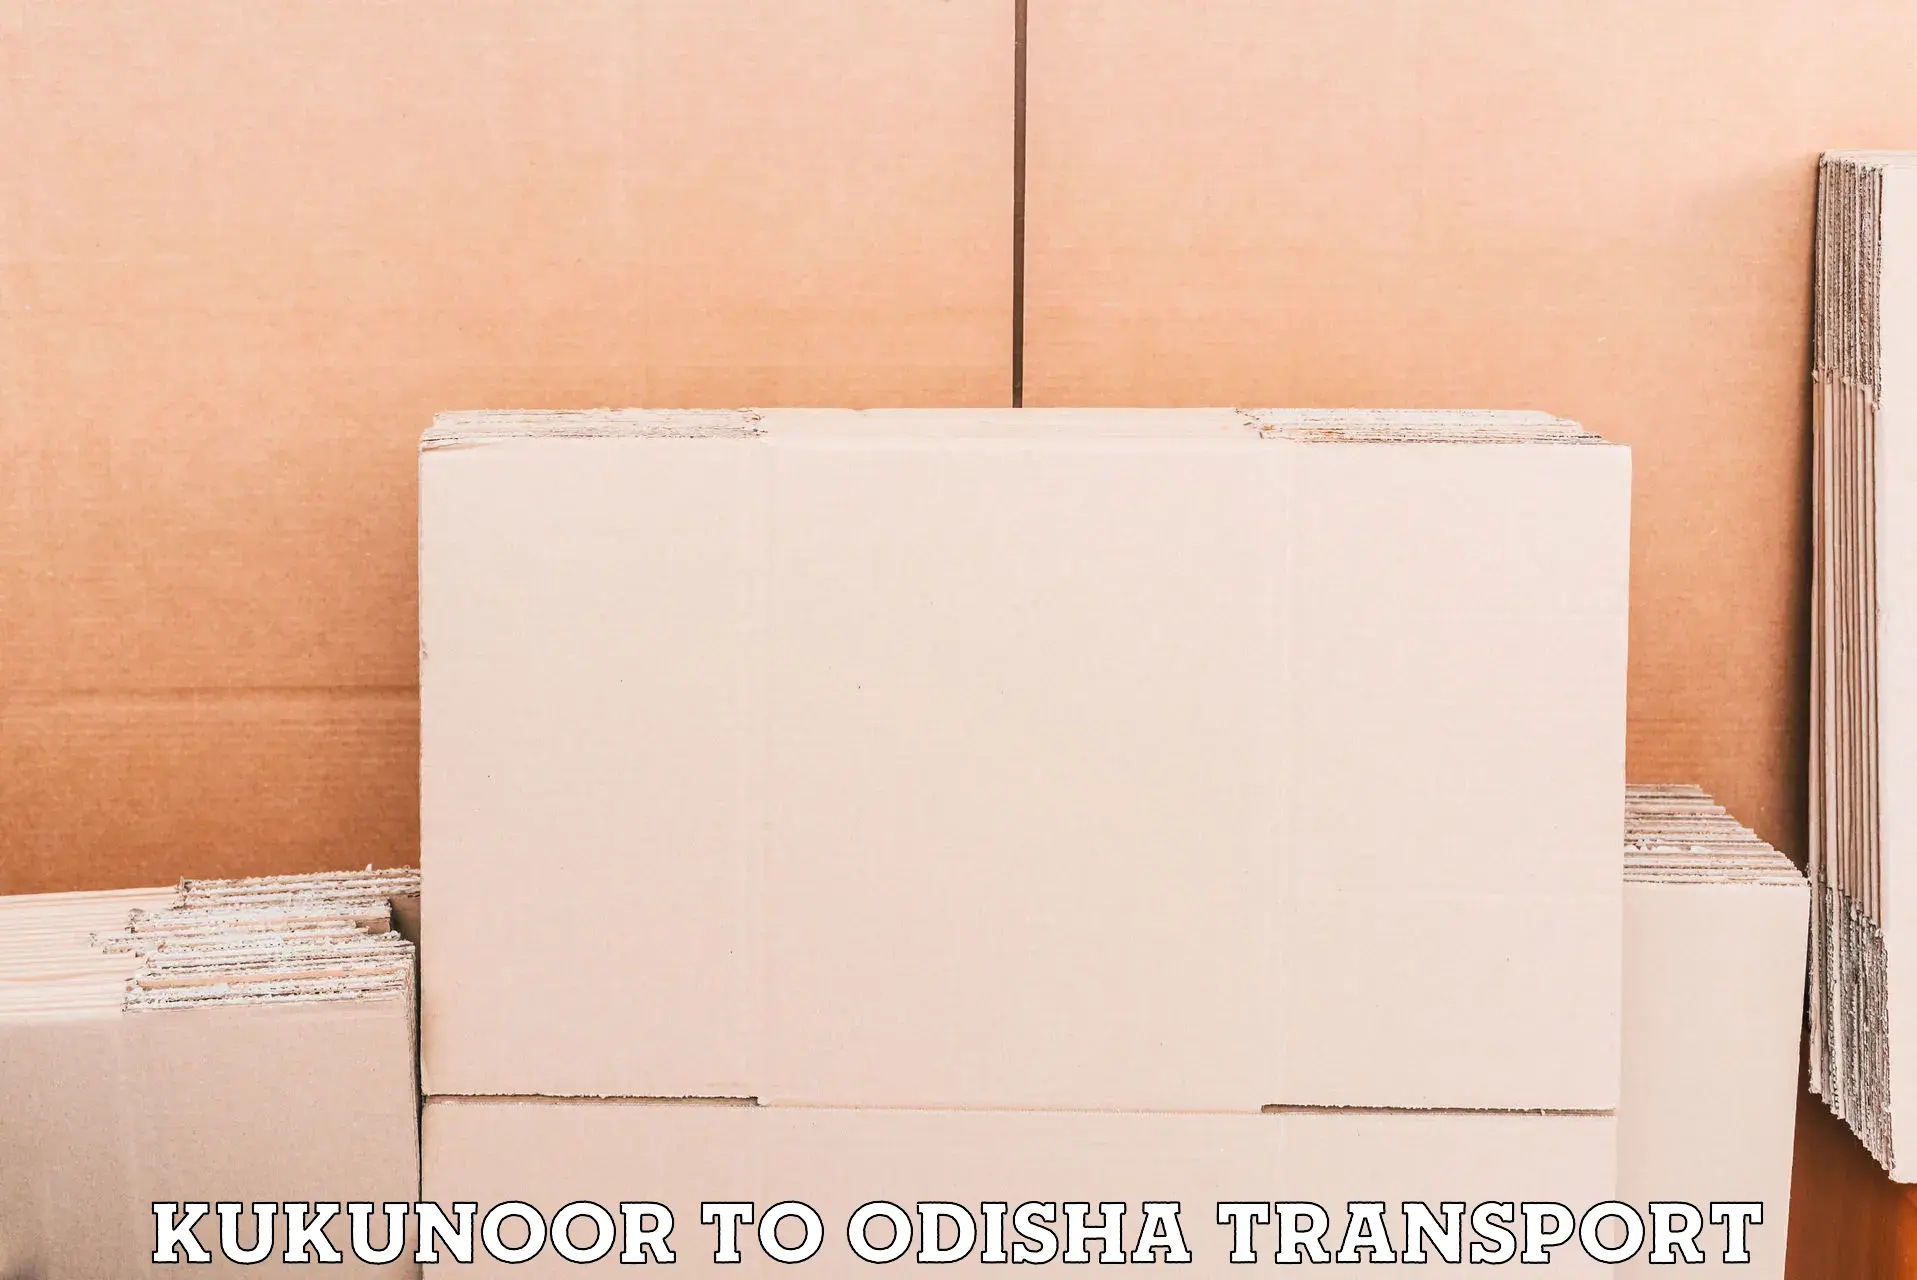 Interstate transport services Kukunoor to Patkura